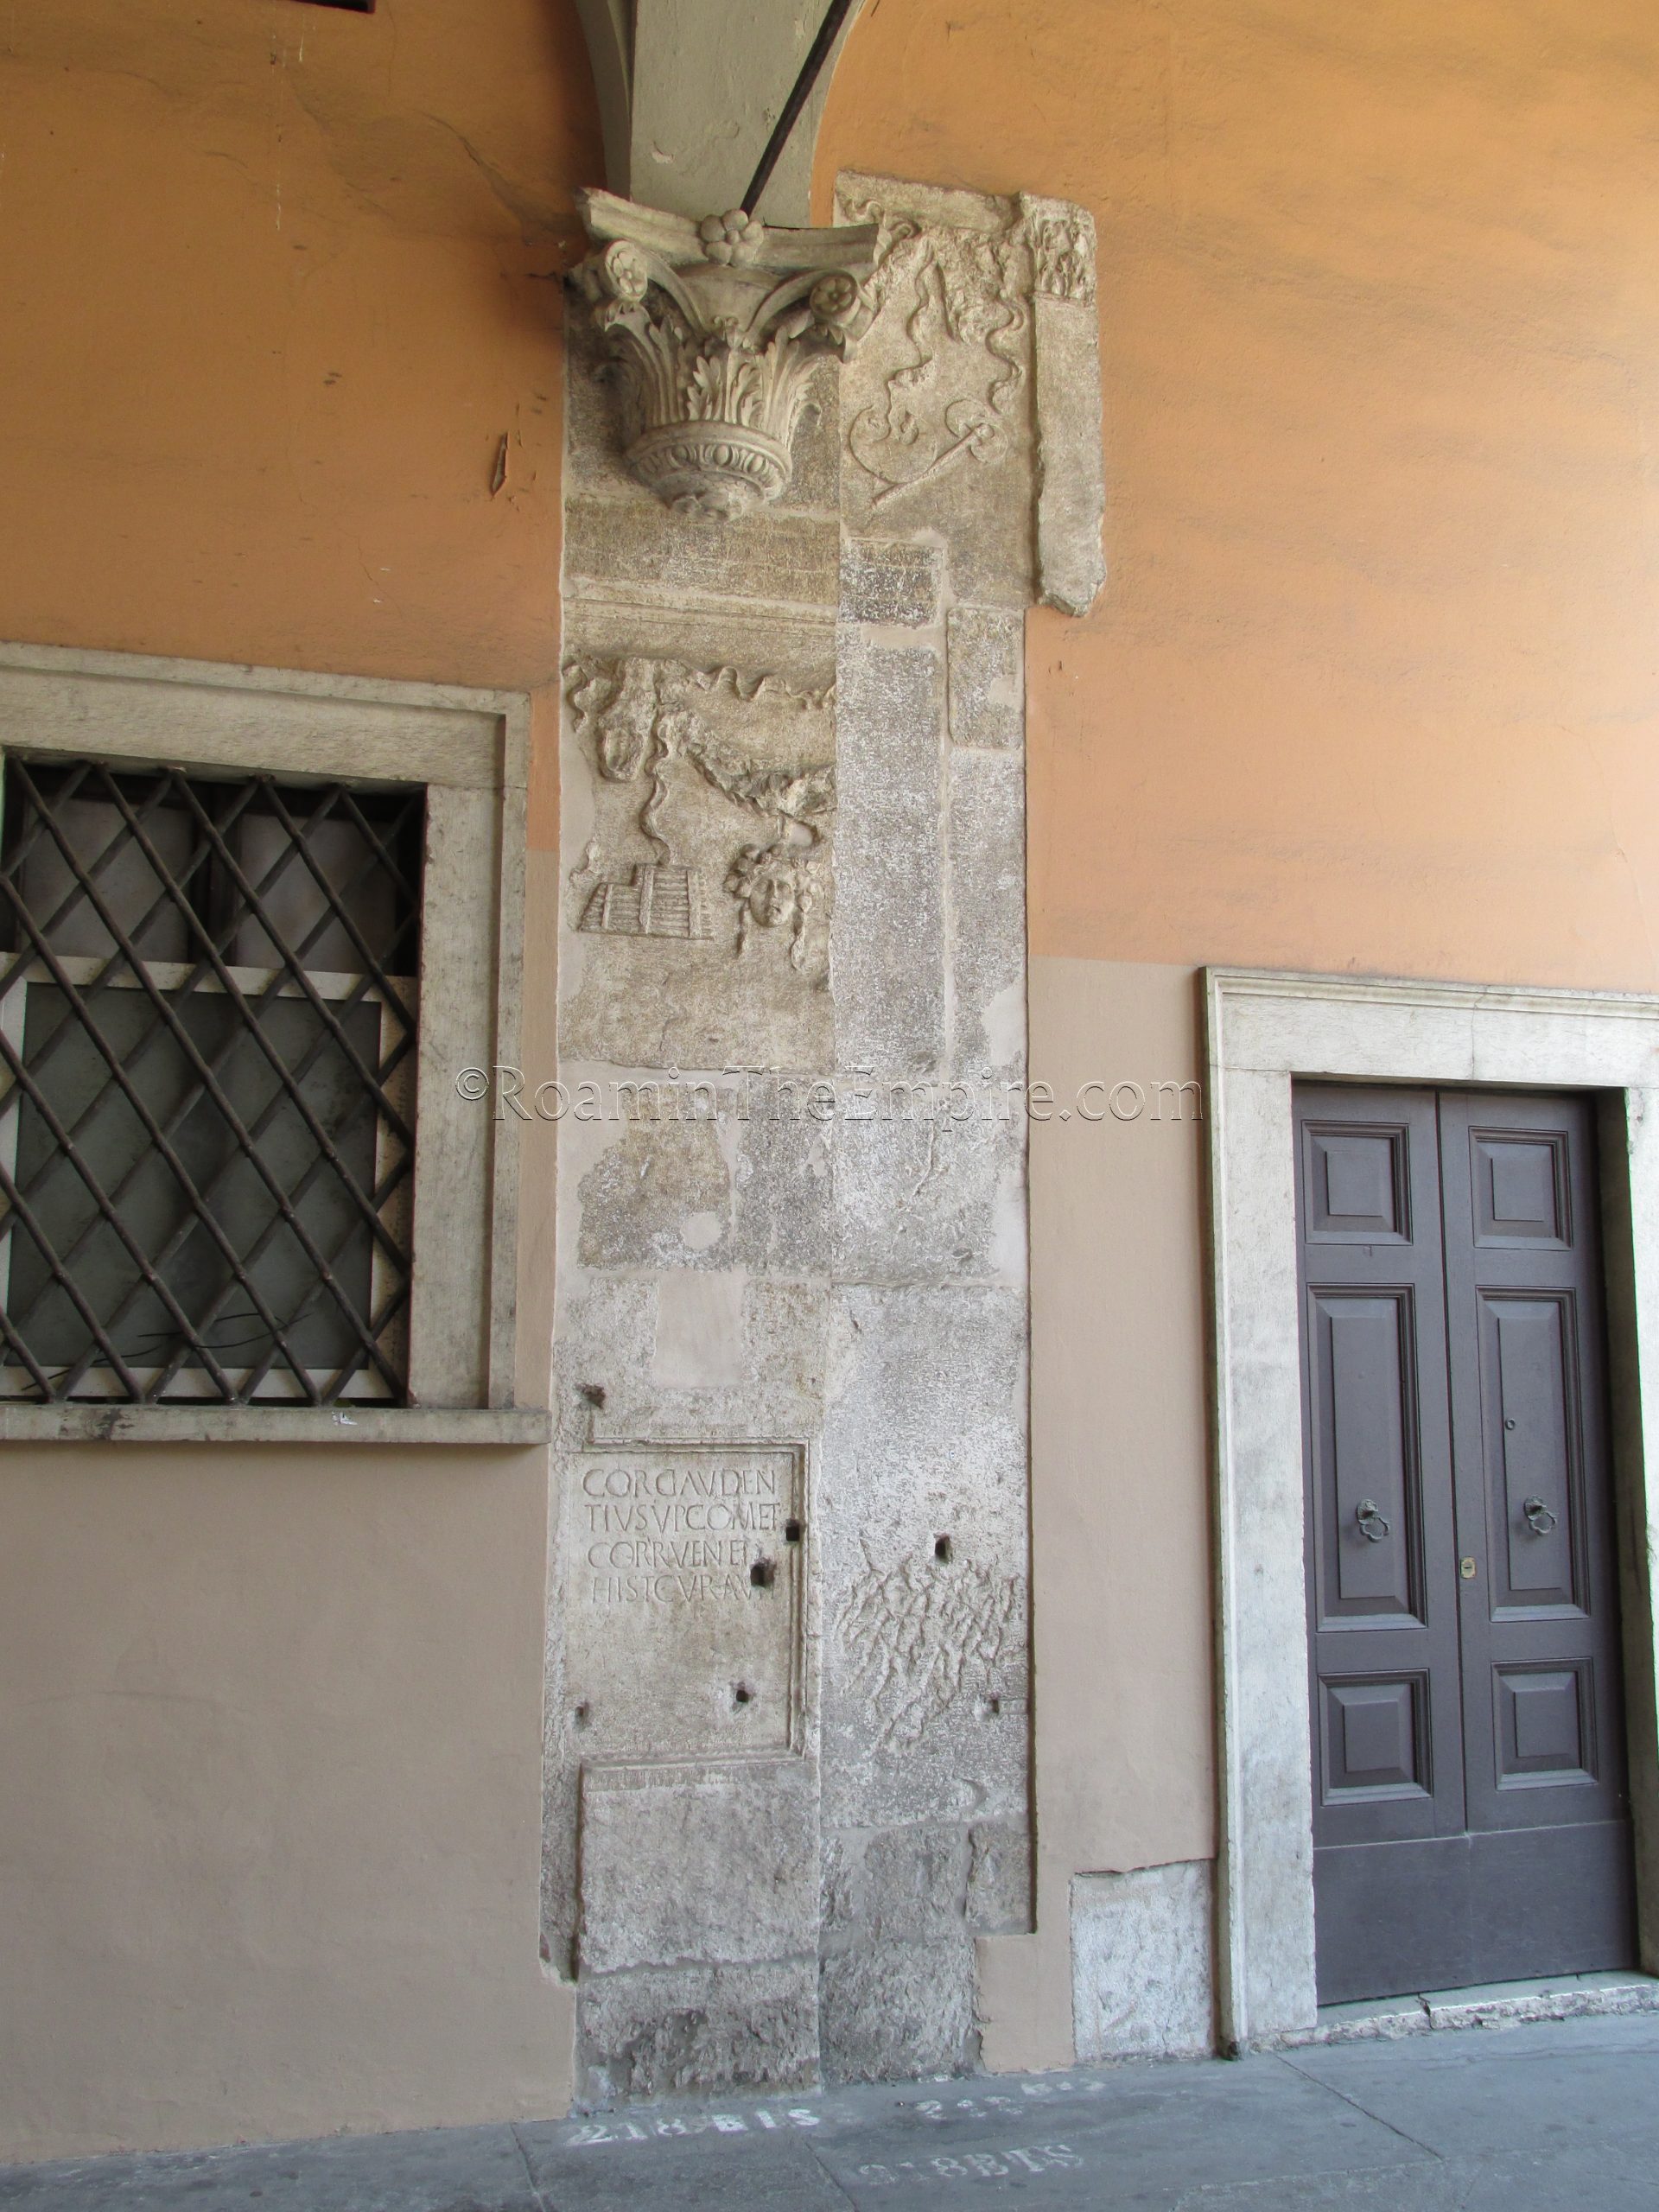 Spoliated material in a corridor off the Piazza della Loggia.